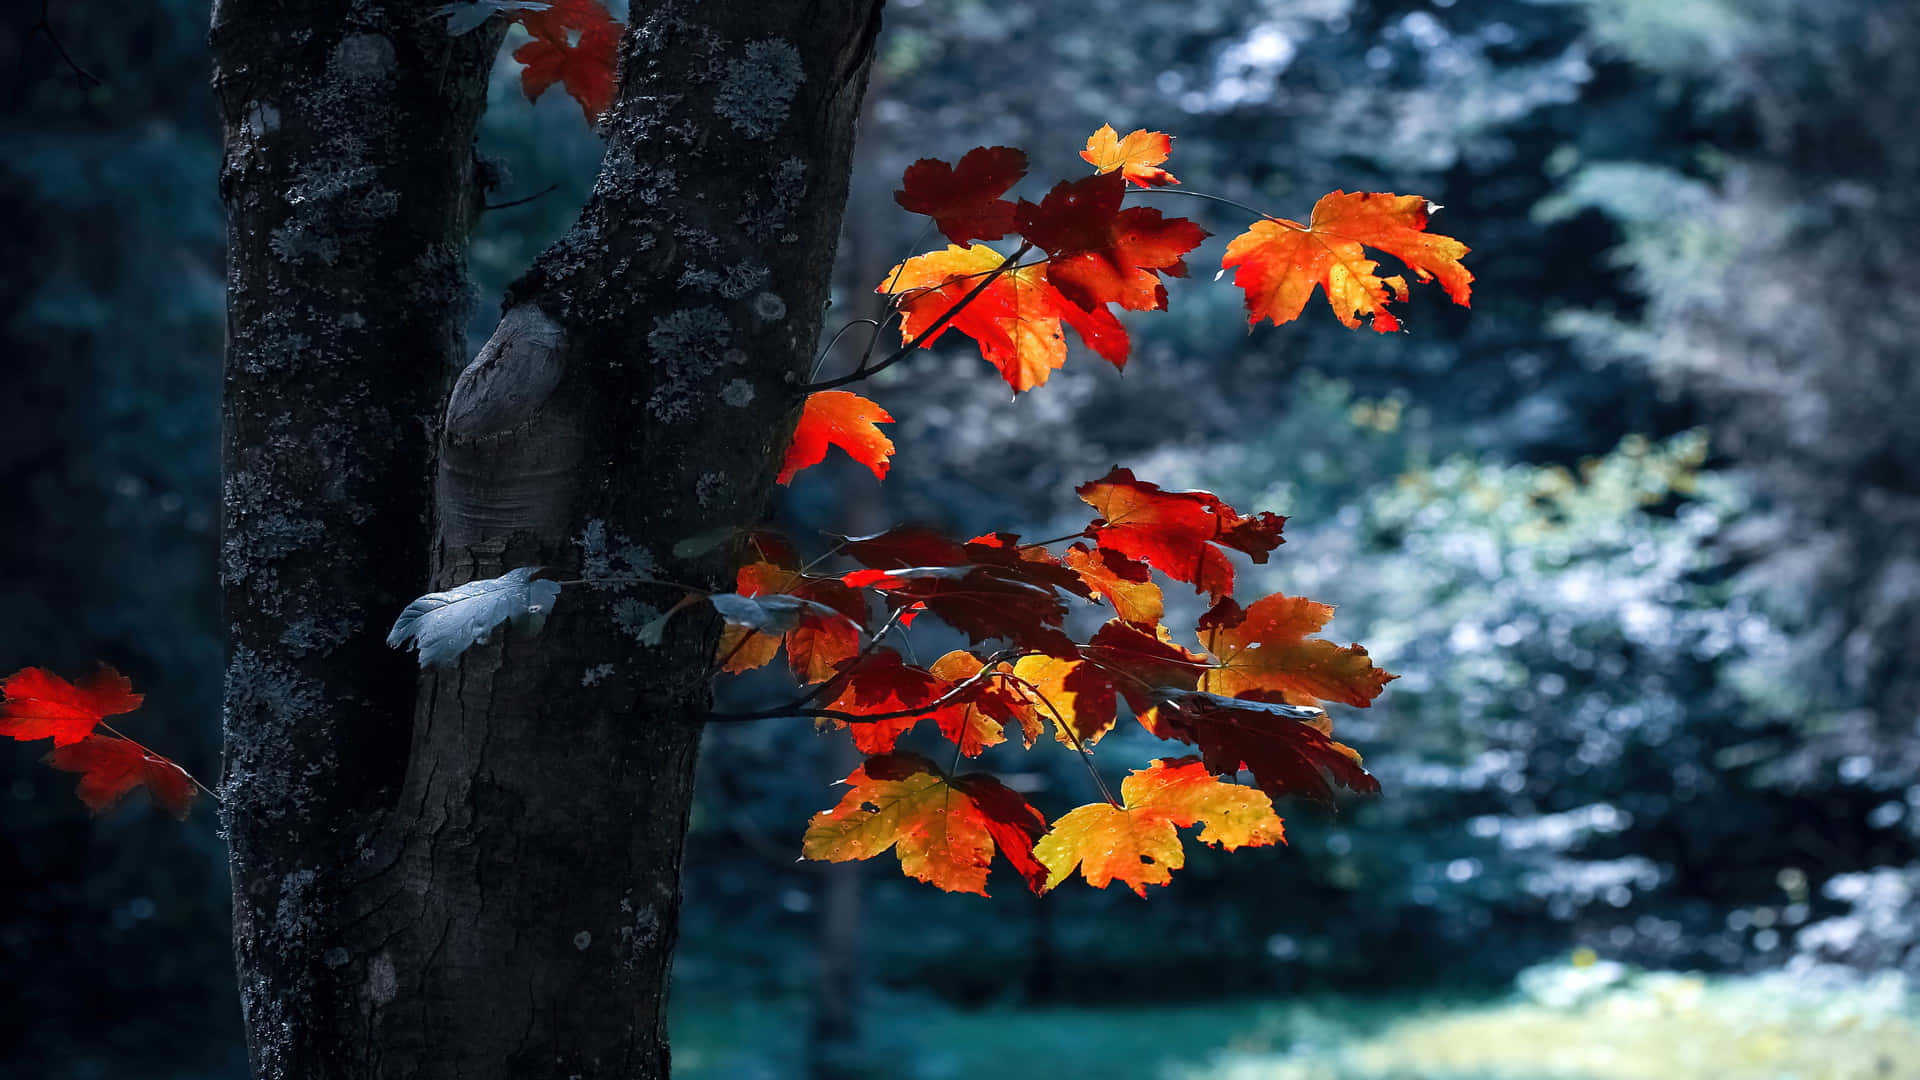 Tag et øjeblik til at nyde den skønhed som efterårets løv giver. Wallpaper